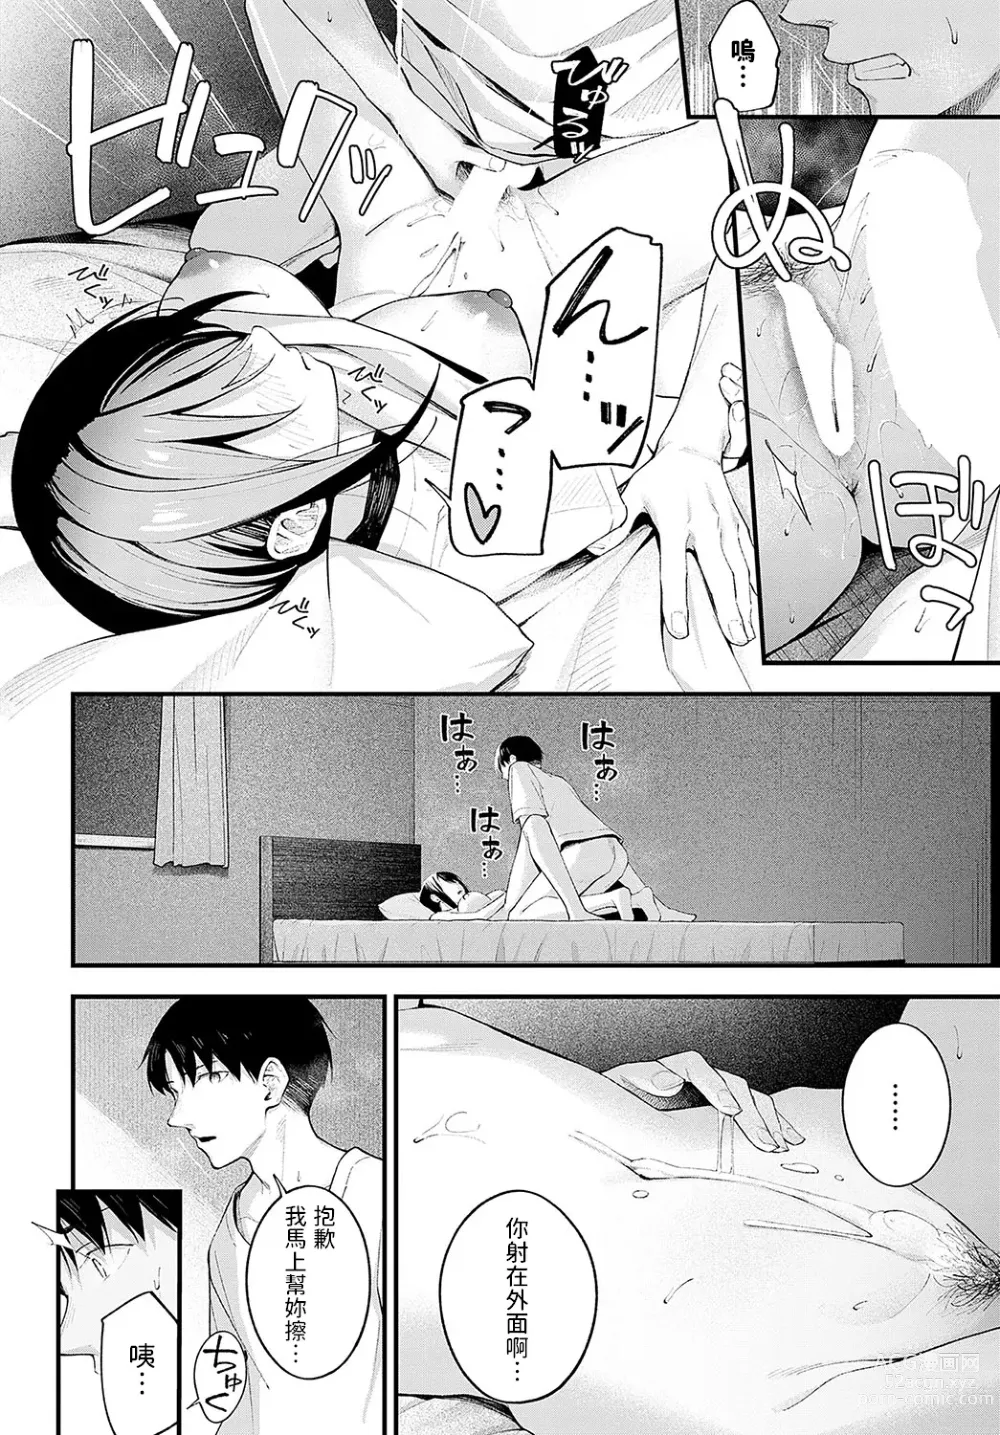 Page 24 of manga Kennetsu